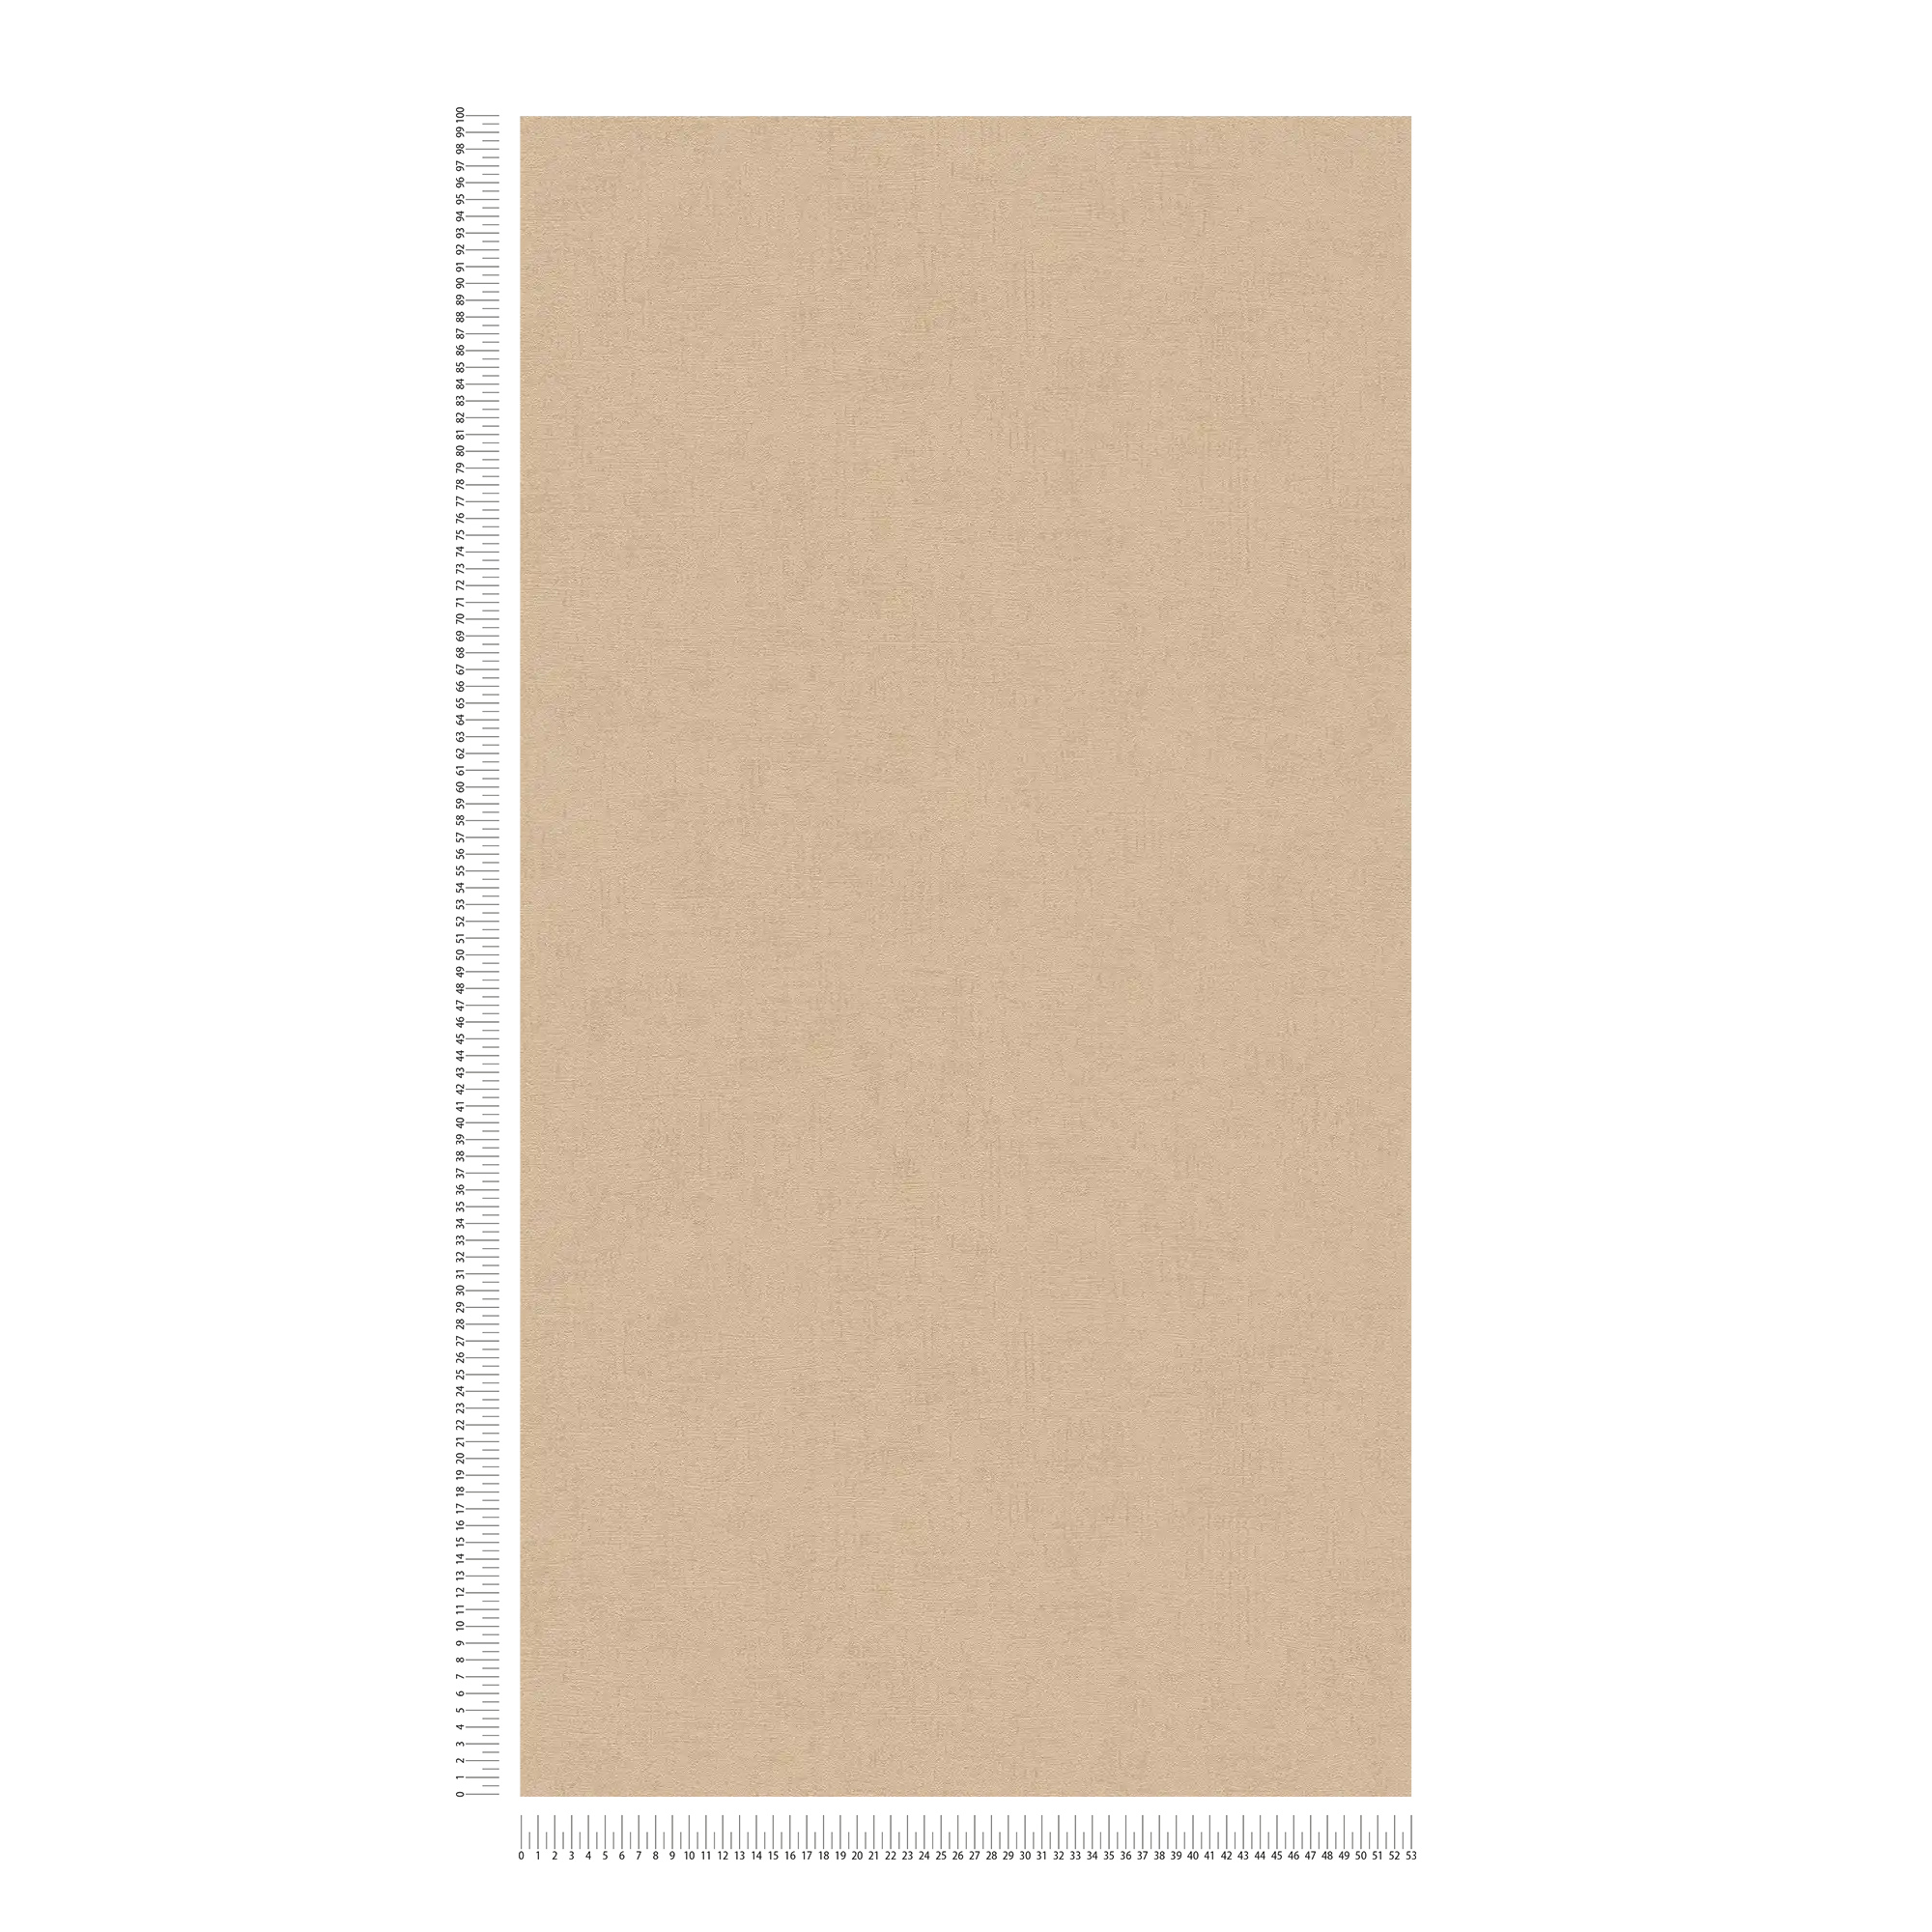             Carta da parati marrone chiaro caramello con struttura ed effetto glitter - marrone, metallico
        